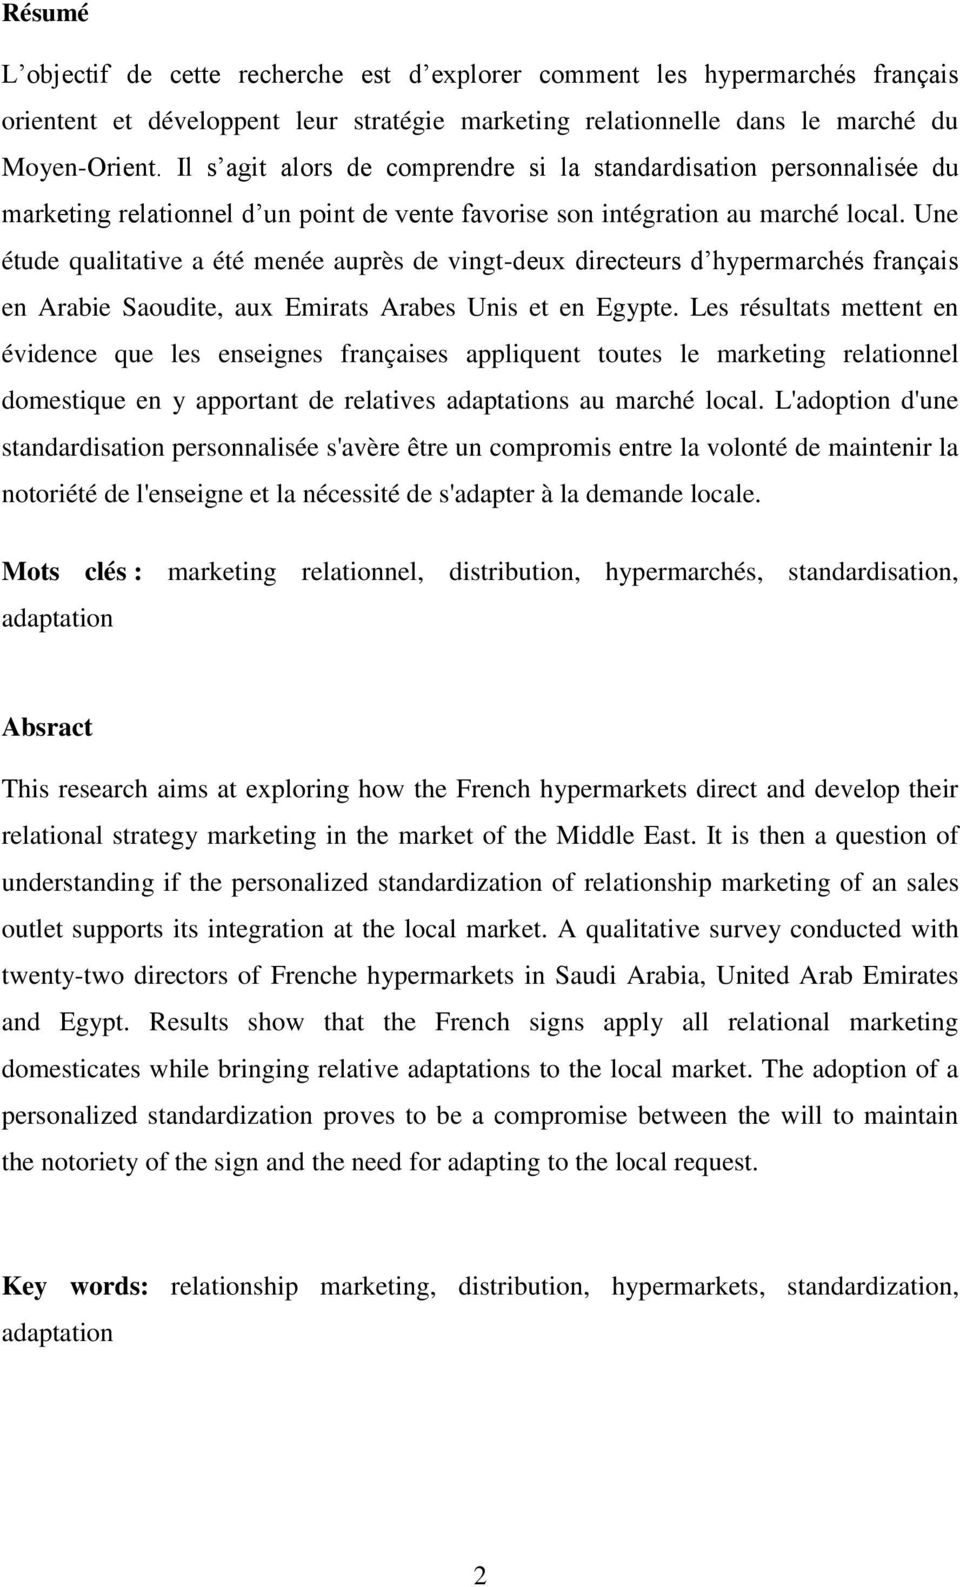 Une étude qualitative a été menée auprès de vingt-deux directeurs d hypermarchés français en Arabie Saoudite, aux Emirats Arabes Unis et en Egypte.